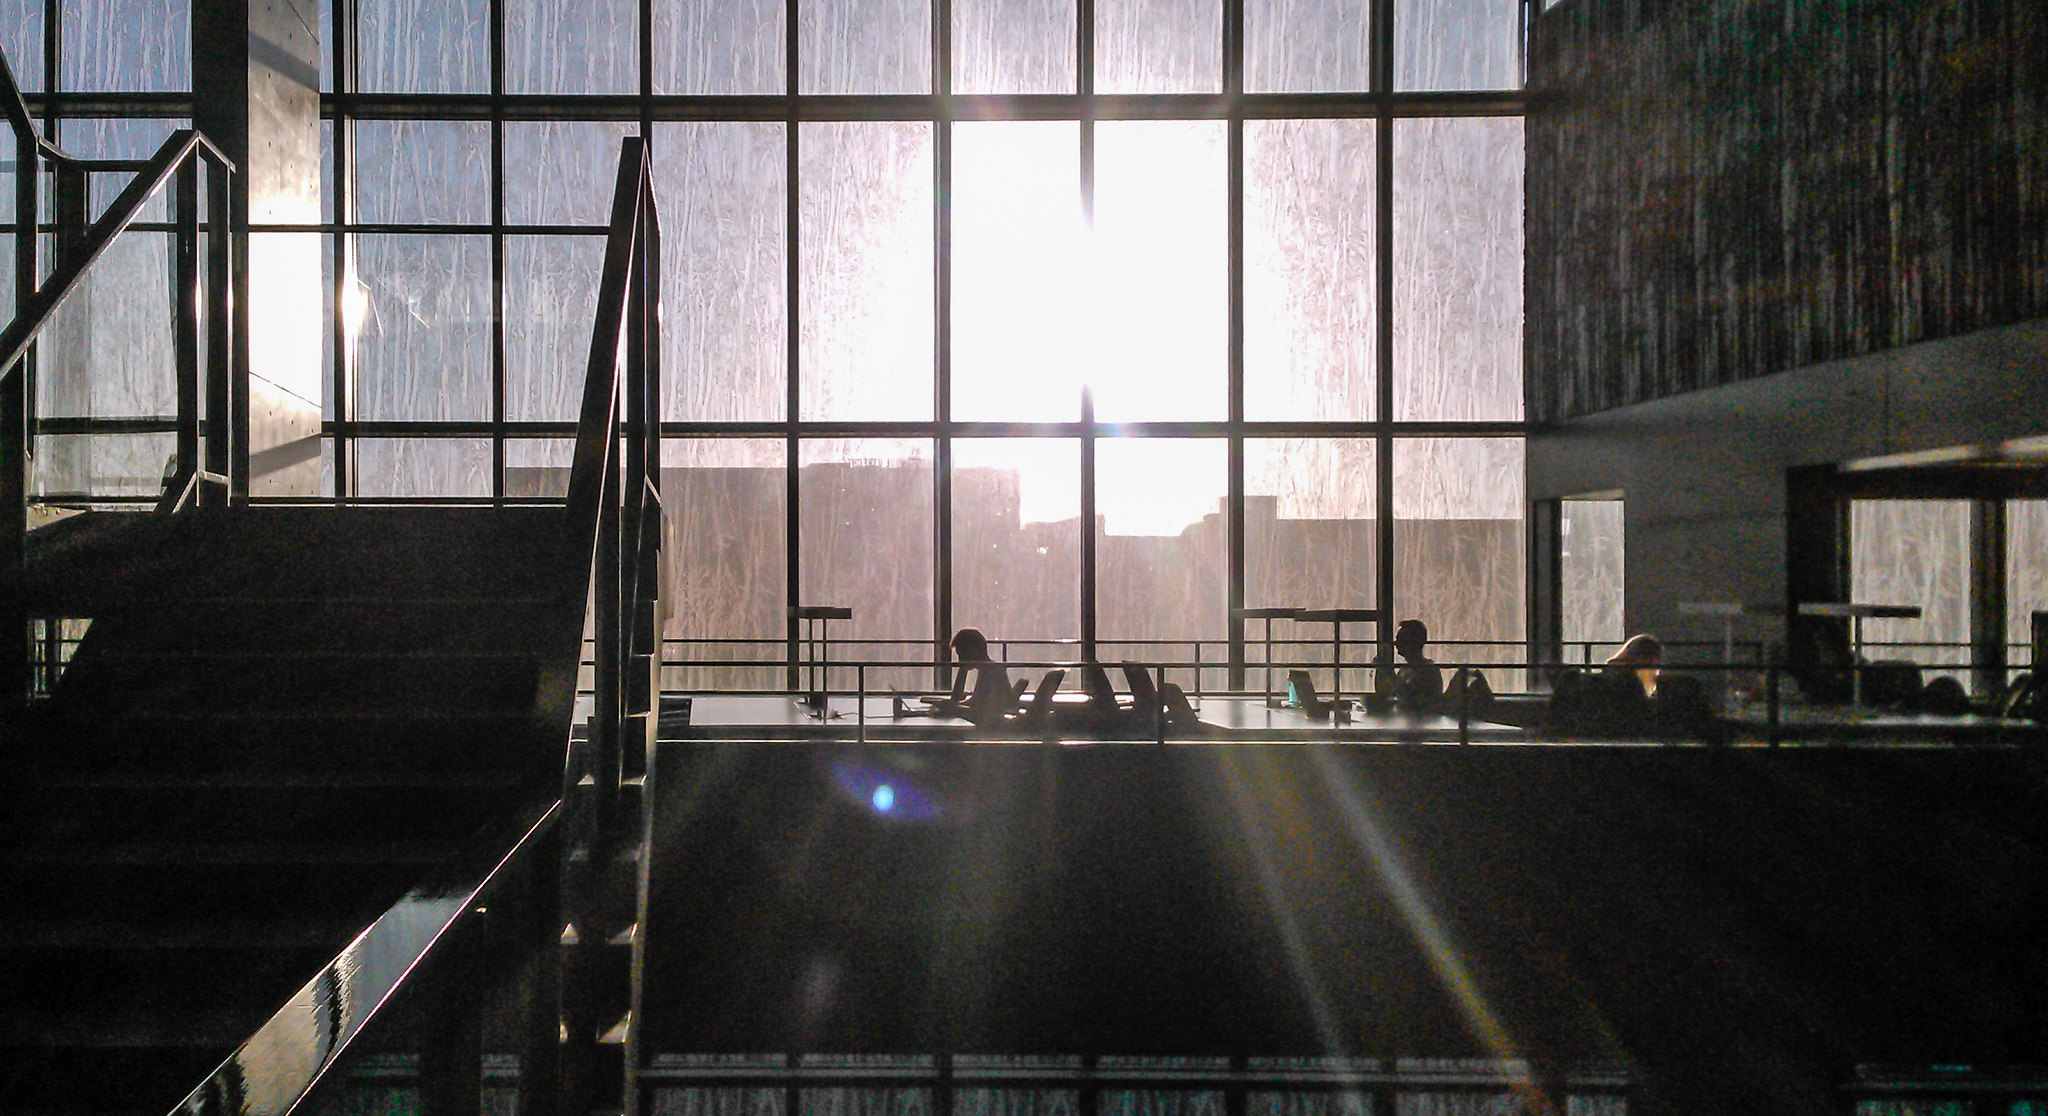 Universiteitsbibliotheek in Utrecht waar de zon door de ramen schijnt